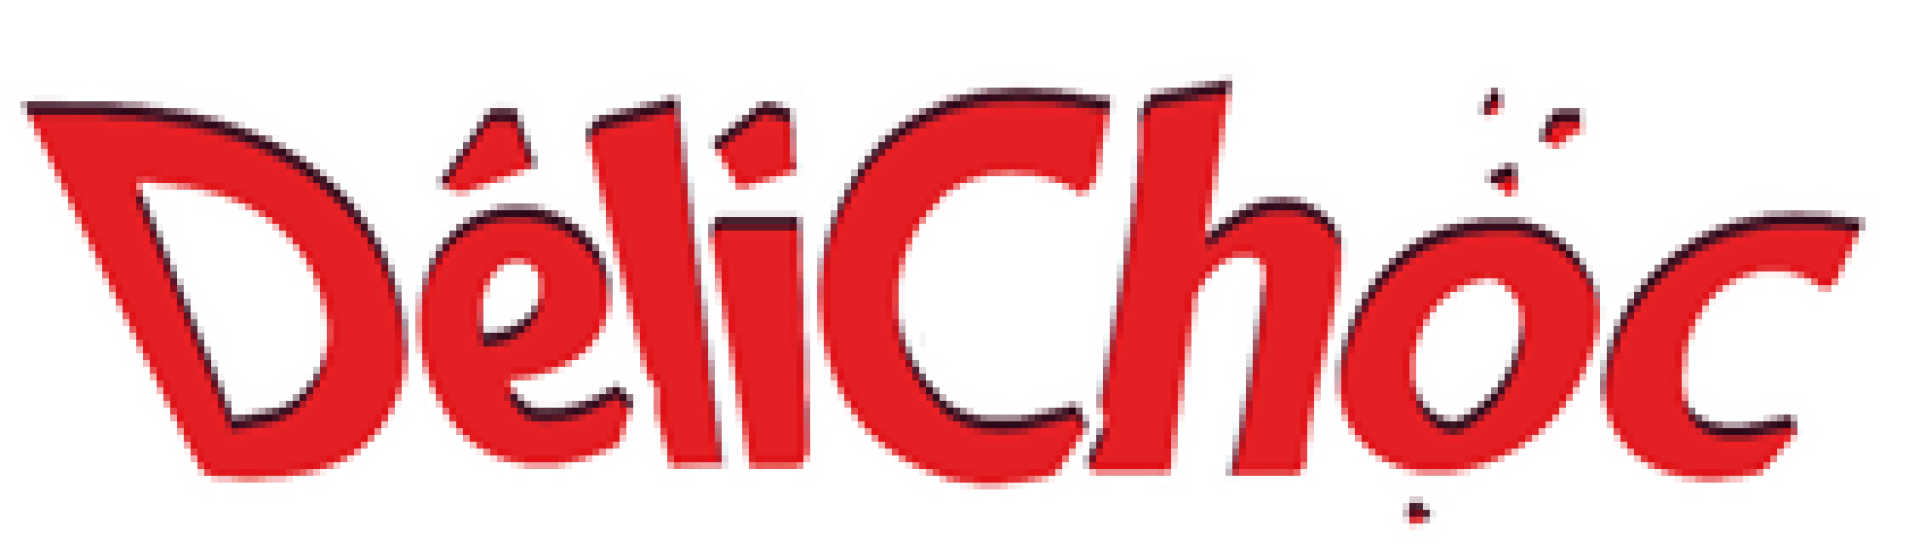 Delichok logo hp